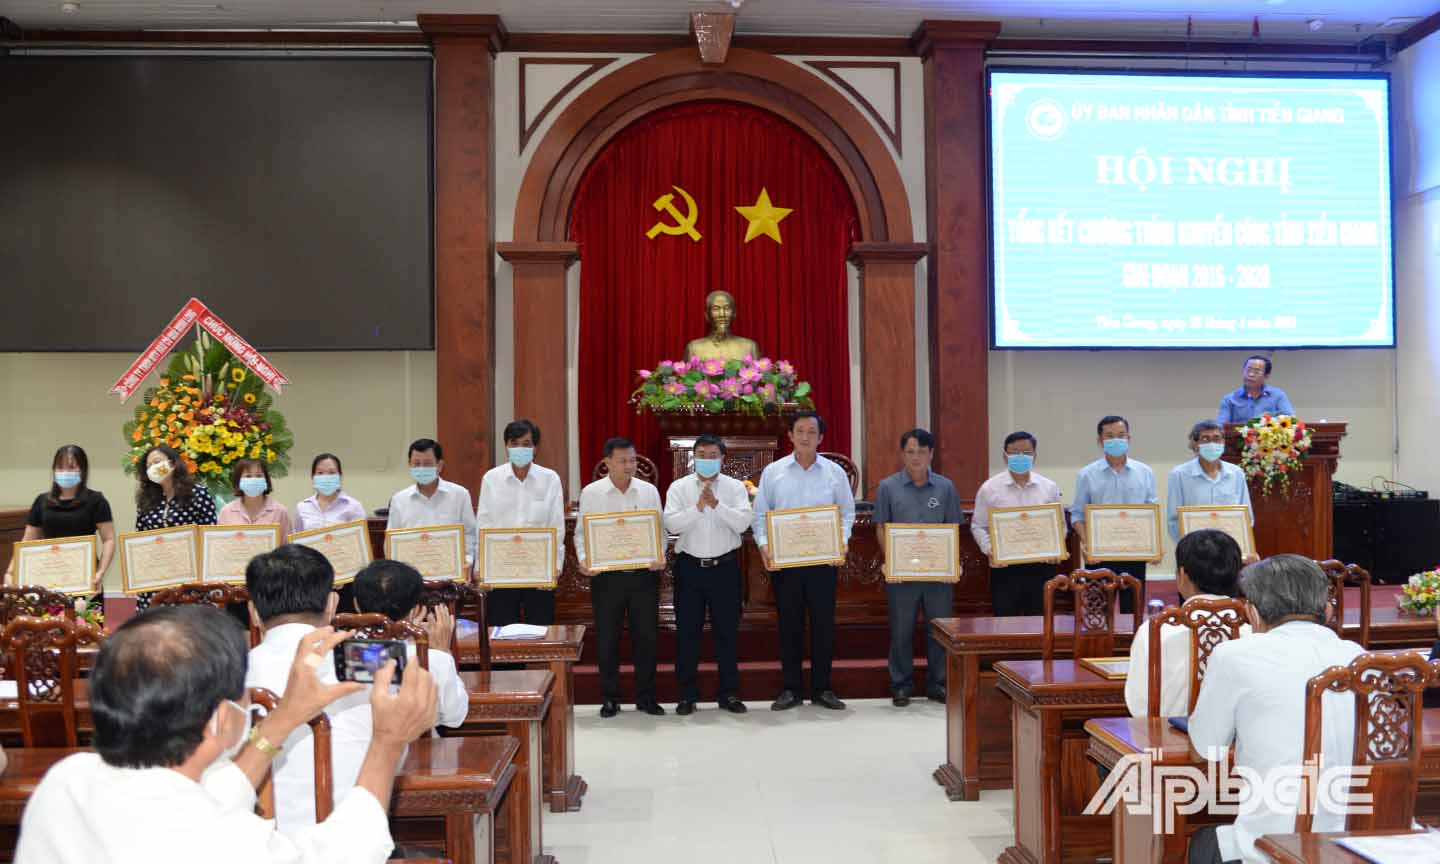 Đồng chí Đặng Văn Tuấn trao bằng khen của UBND tỉnh cho các cá nhân, tập thể có thành tích xuất sắc trong thực hiện chương trình giai đoạn 2016 - 2020.